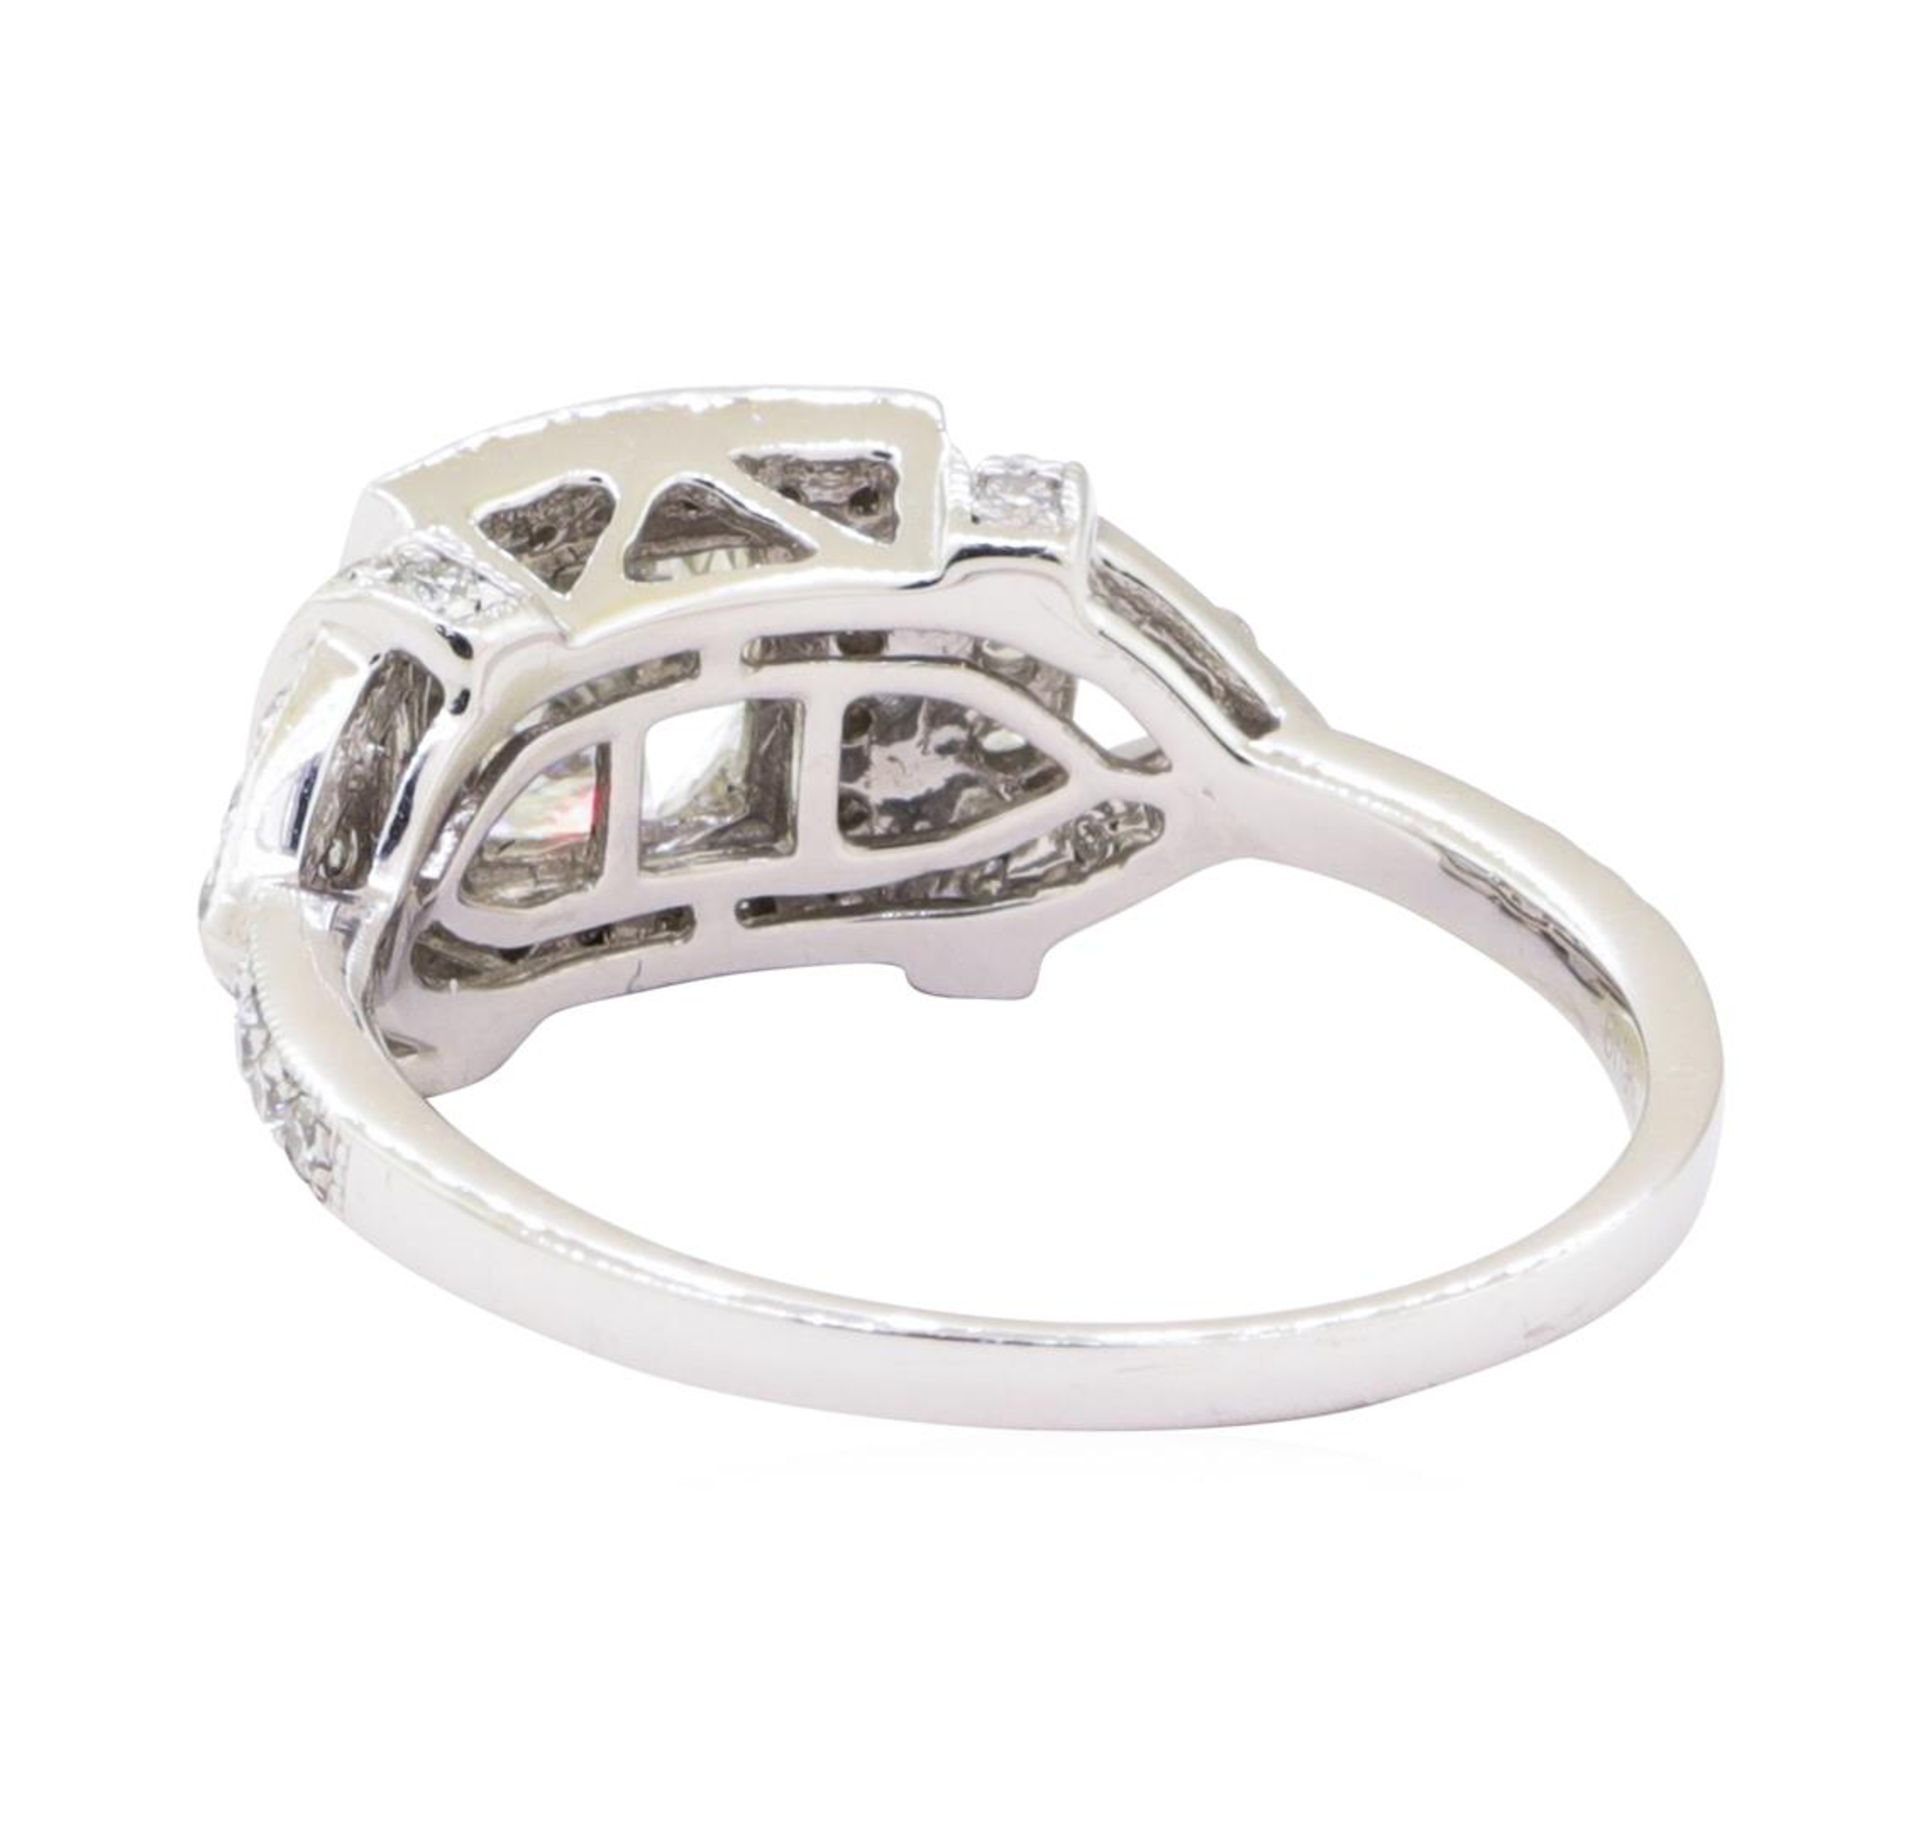 1.51 ctw Diamond Ring - Platinum - Image 3 of 4